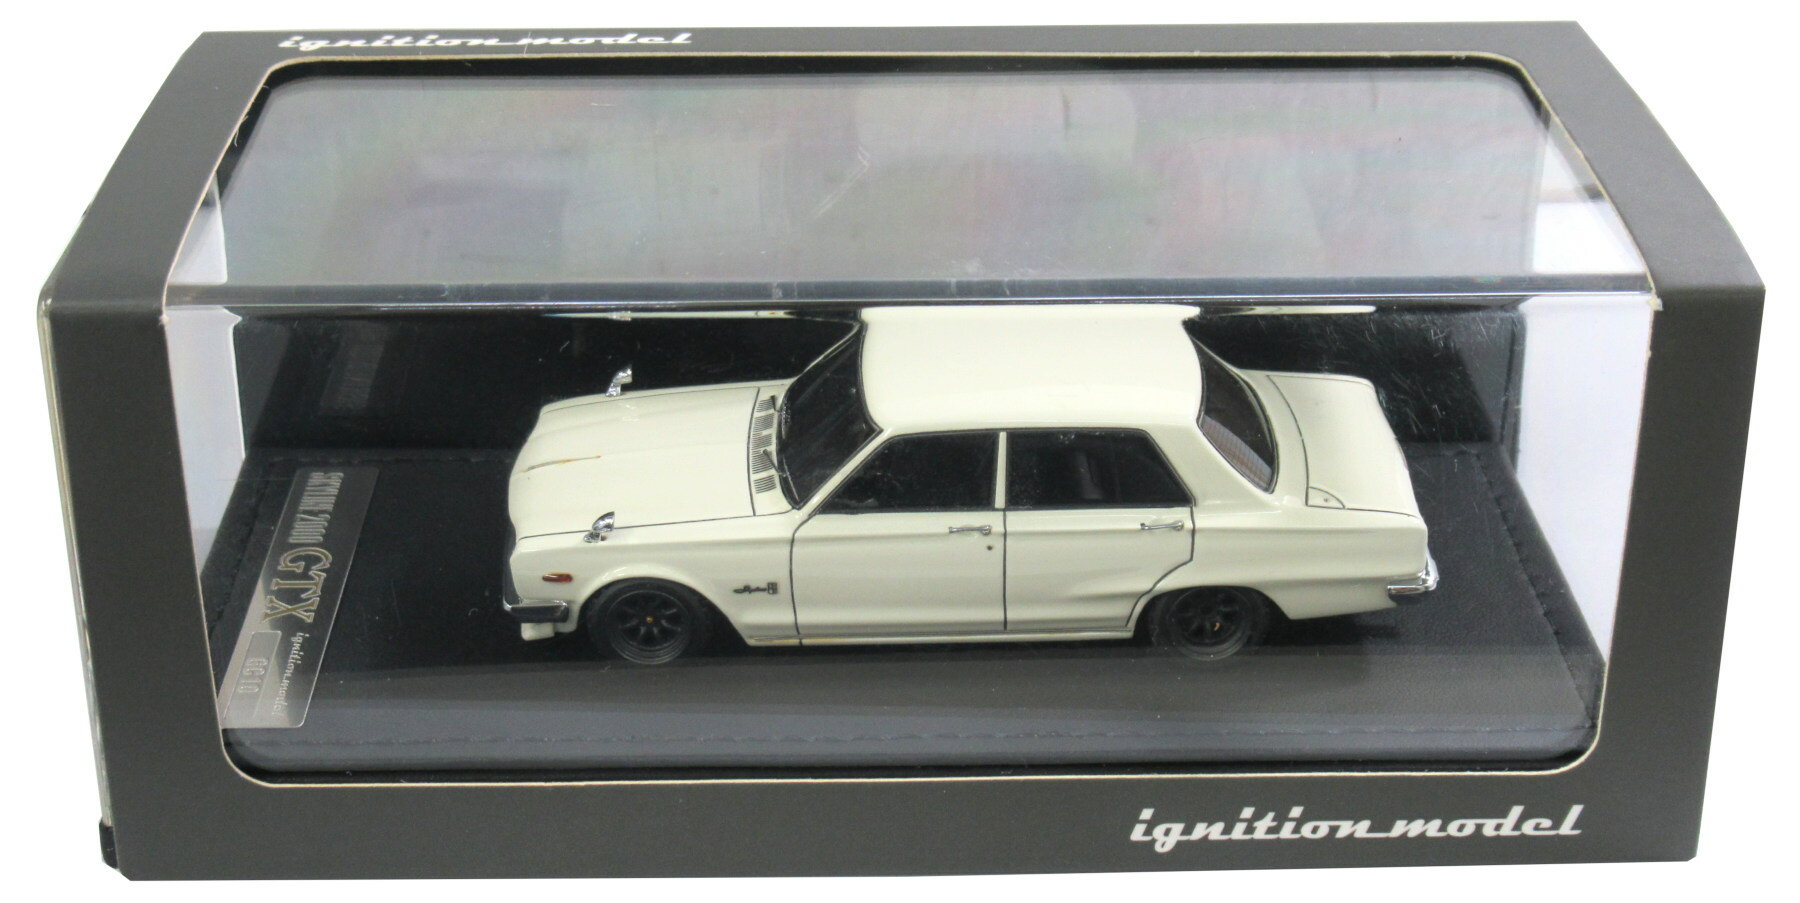 【中古】 その他 スケールミニカー(1/43) ignition model Nissan Skyline 2000 GT-X (GC10) White 【D】 経年劣化/メーカー出荷時からの塗装ムラ等はご容赦ください